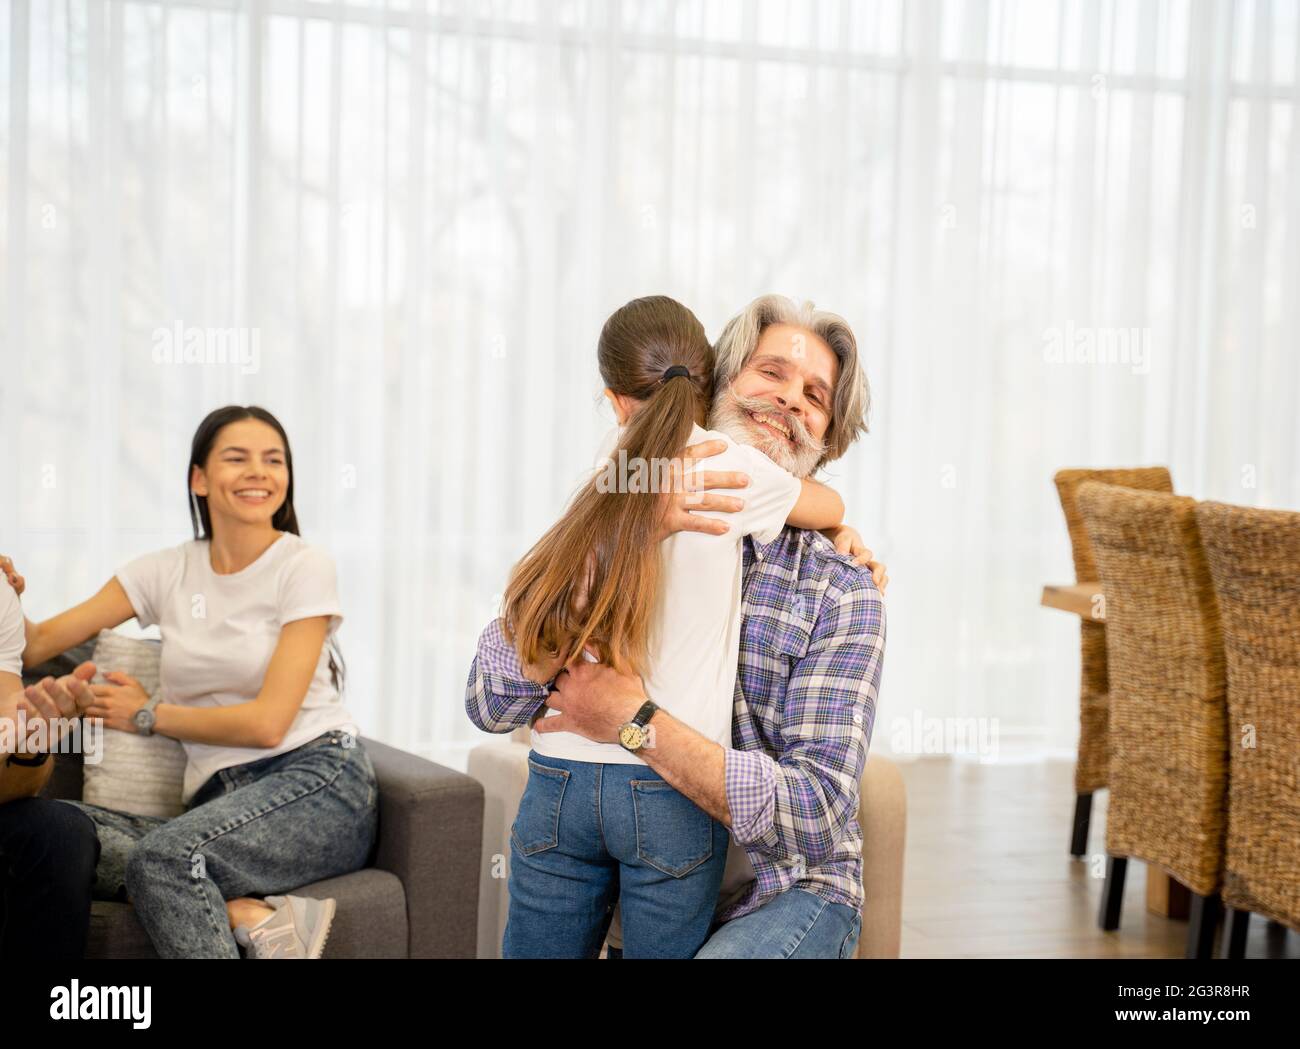 Eccitata nipotina carina hugging nonno felice che esprime l'amore quando si passa il tempo insieme e giocare in salotto leggero, madre felice che li guarda e sorridendo. Concetto di famiglia Foto Stock